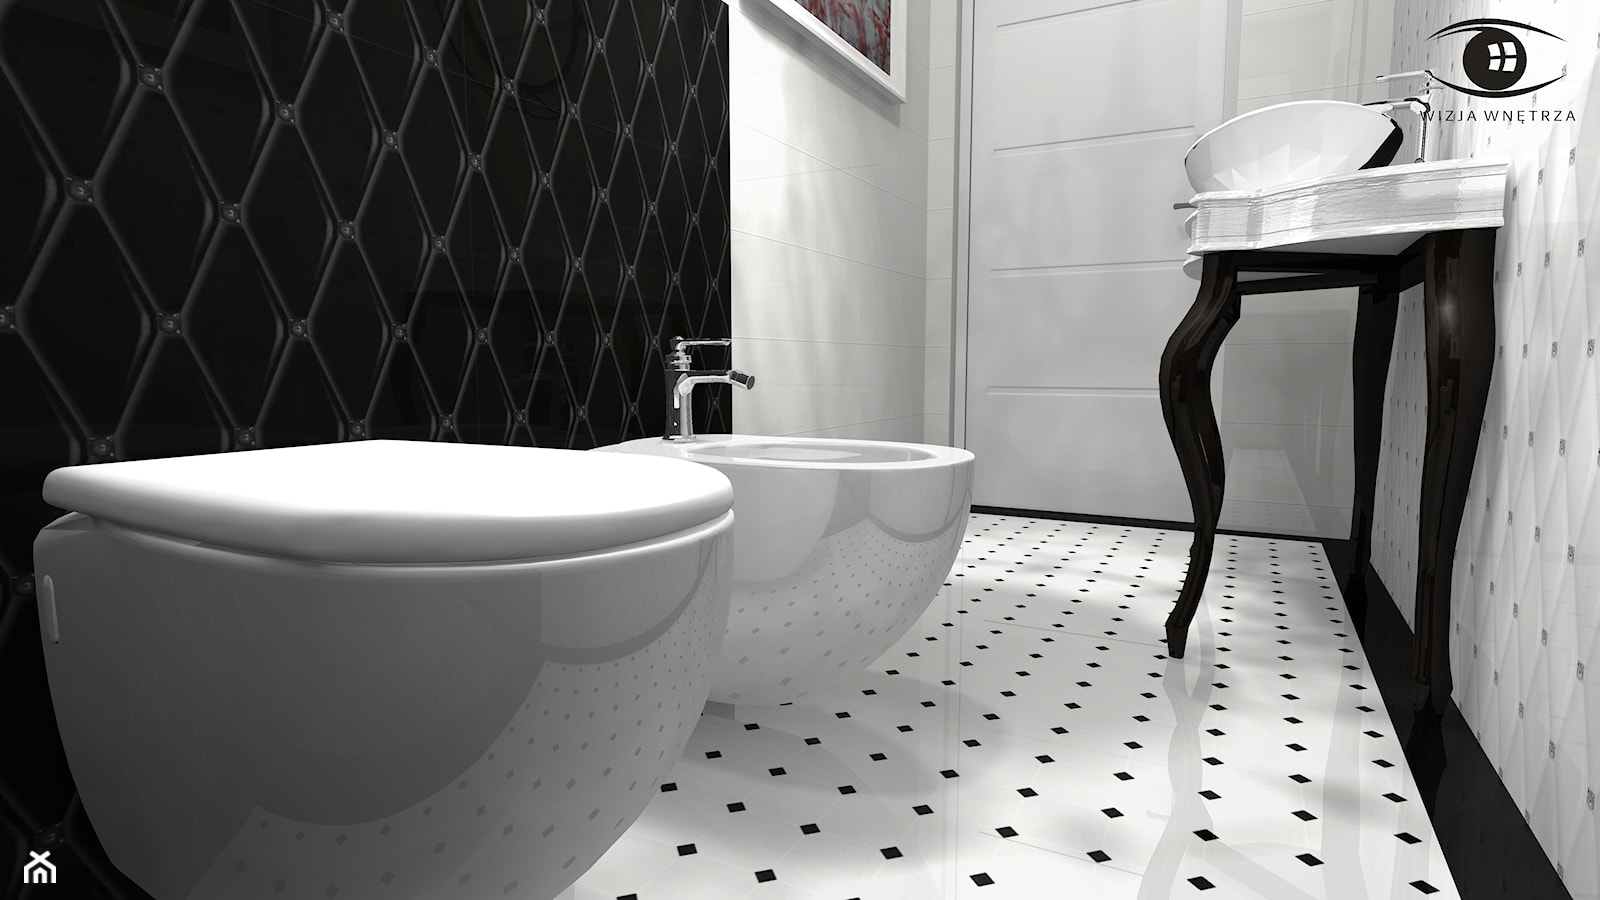 TOALETA GLAMOUR - Mała łazienka, styl glamour - zdjęcie od Wizja Wnętrza - projekty i aranżacje - Homebook